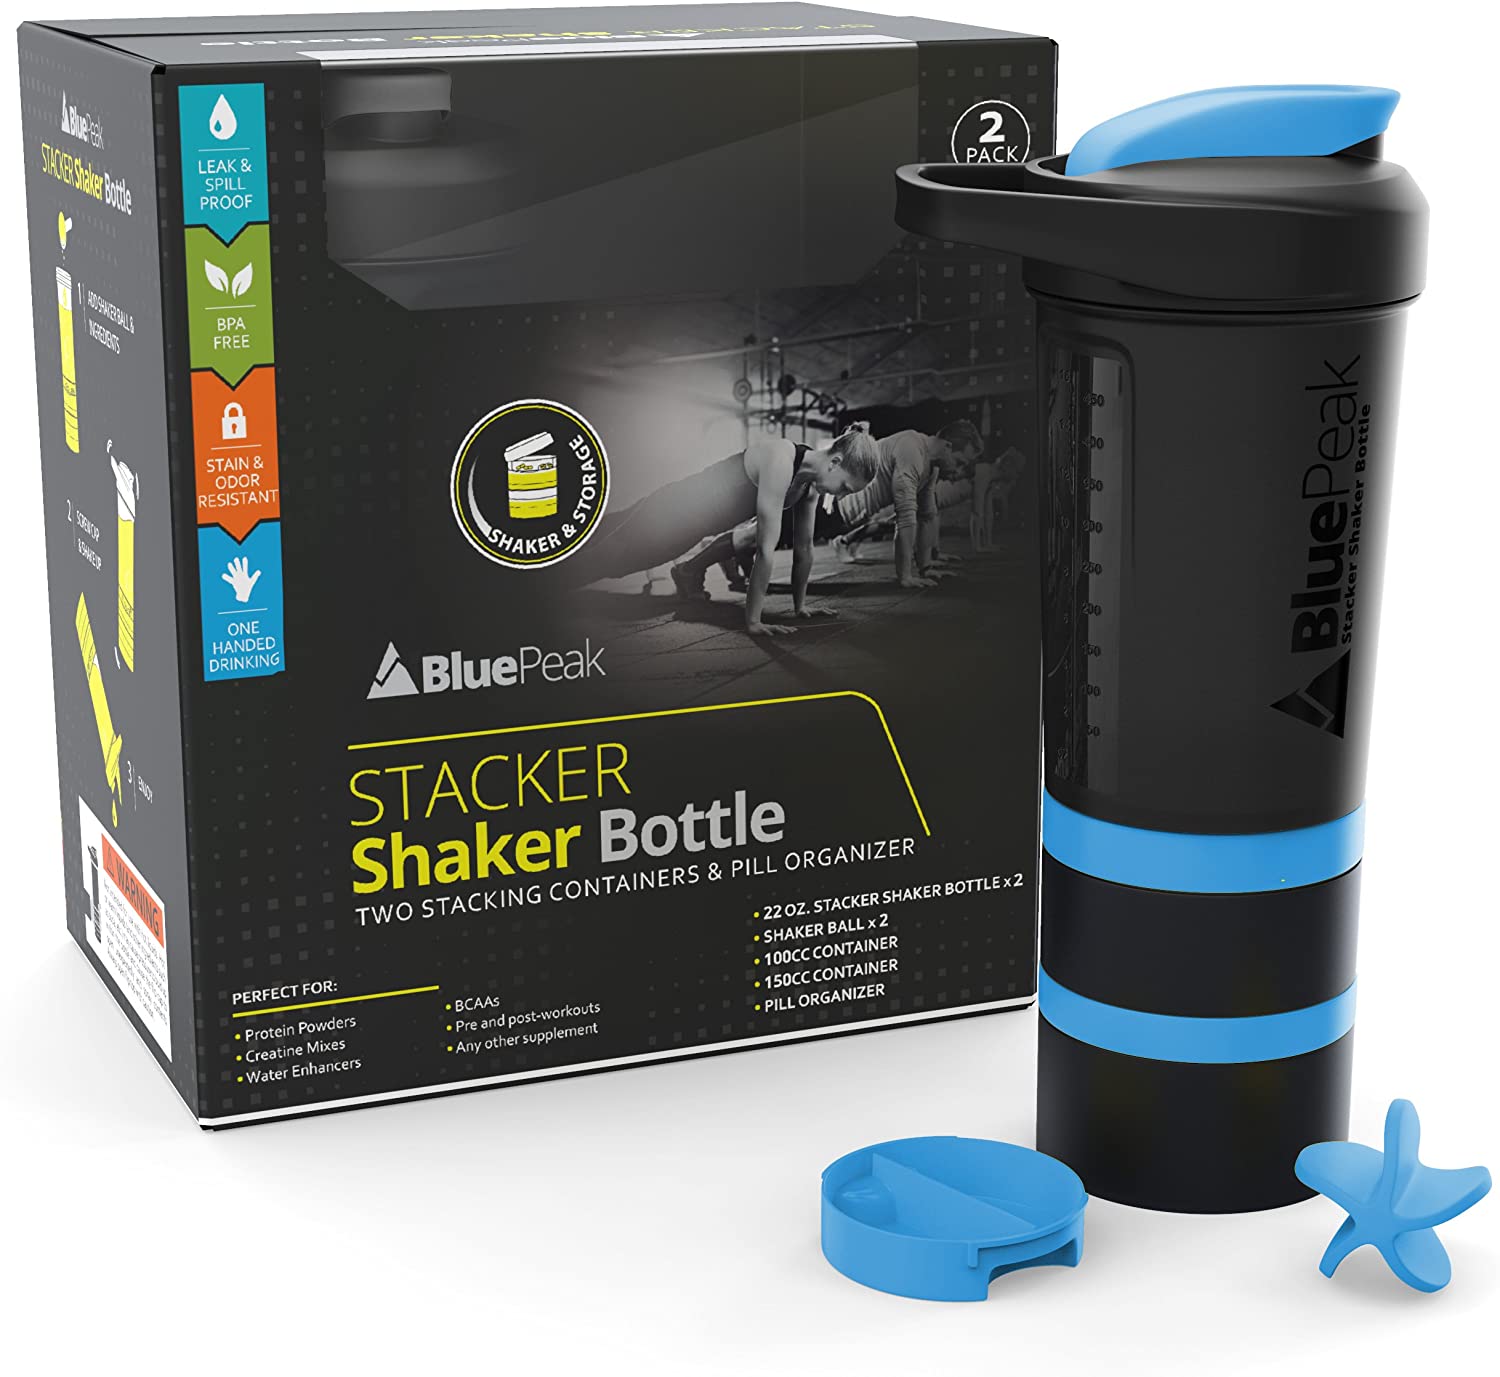 Shaker Bottle Buddy Pack